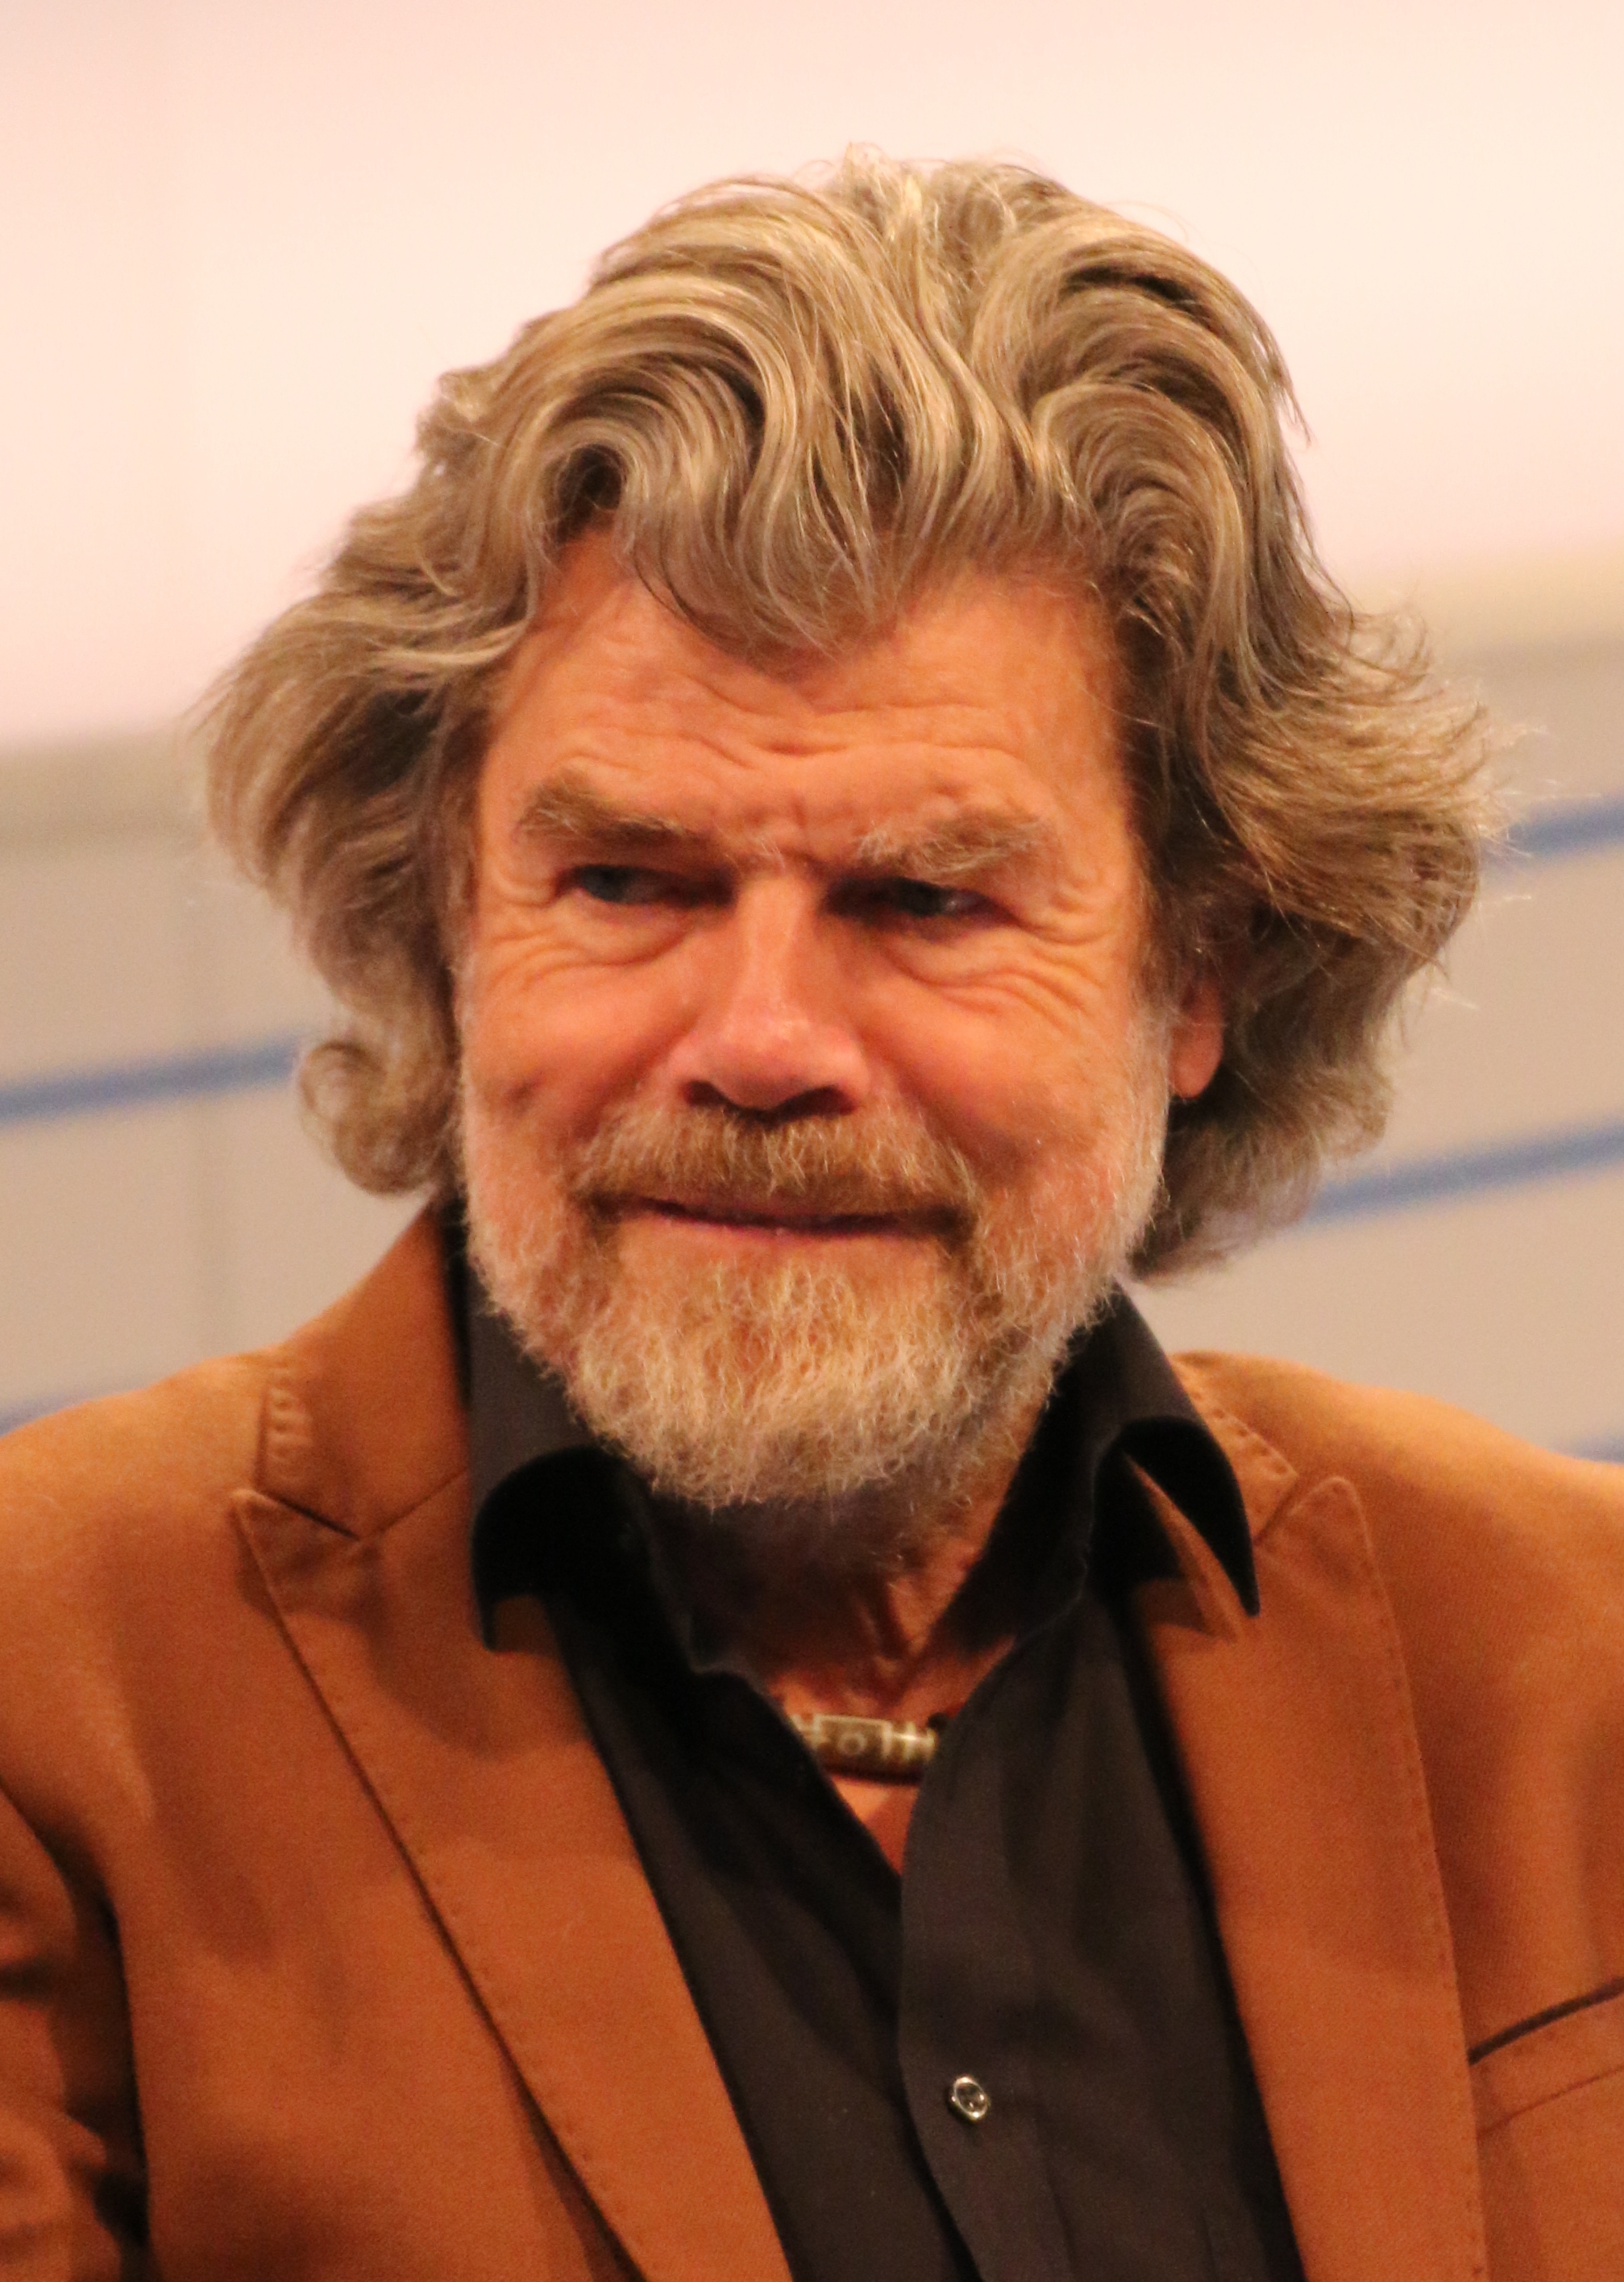 auteur Reinhold Messner de la citation J'ai été dans les endroits les plus dangereux juste pour survivre. Un homme intelligent resterait dans un endroit sûr pour survivre.